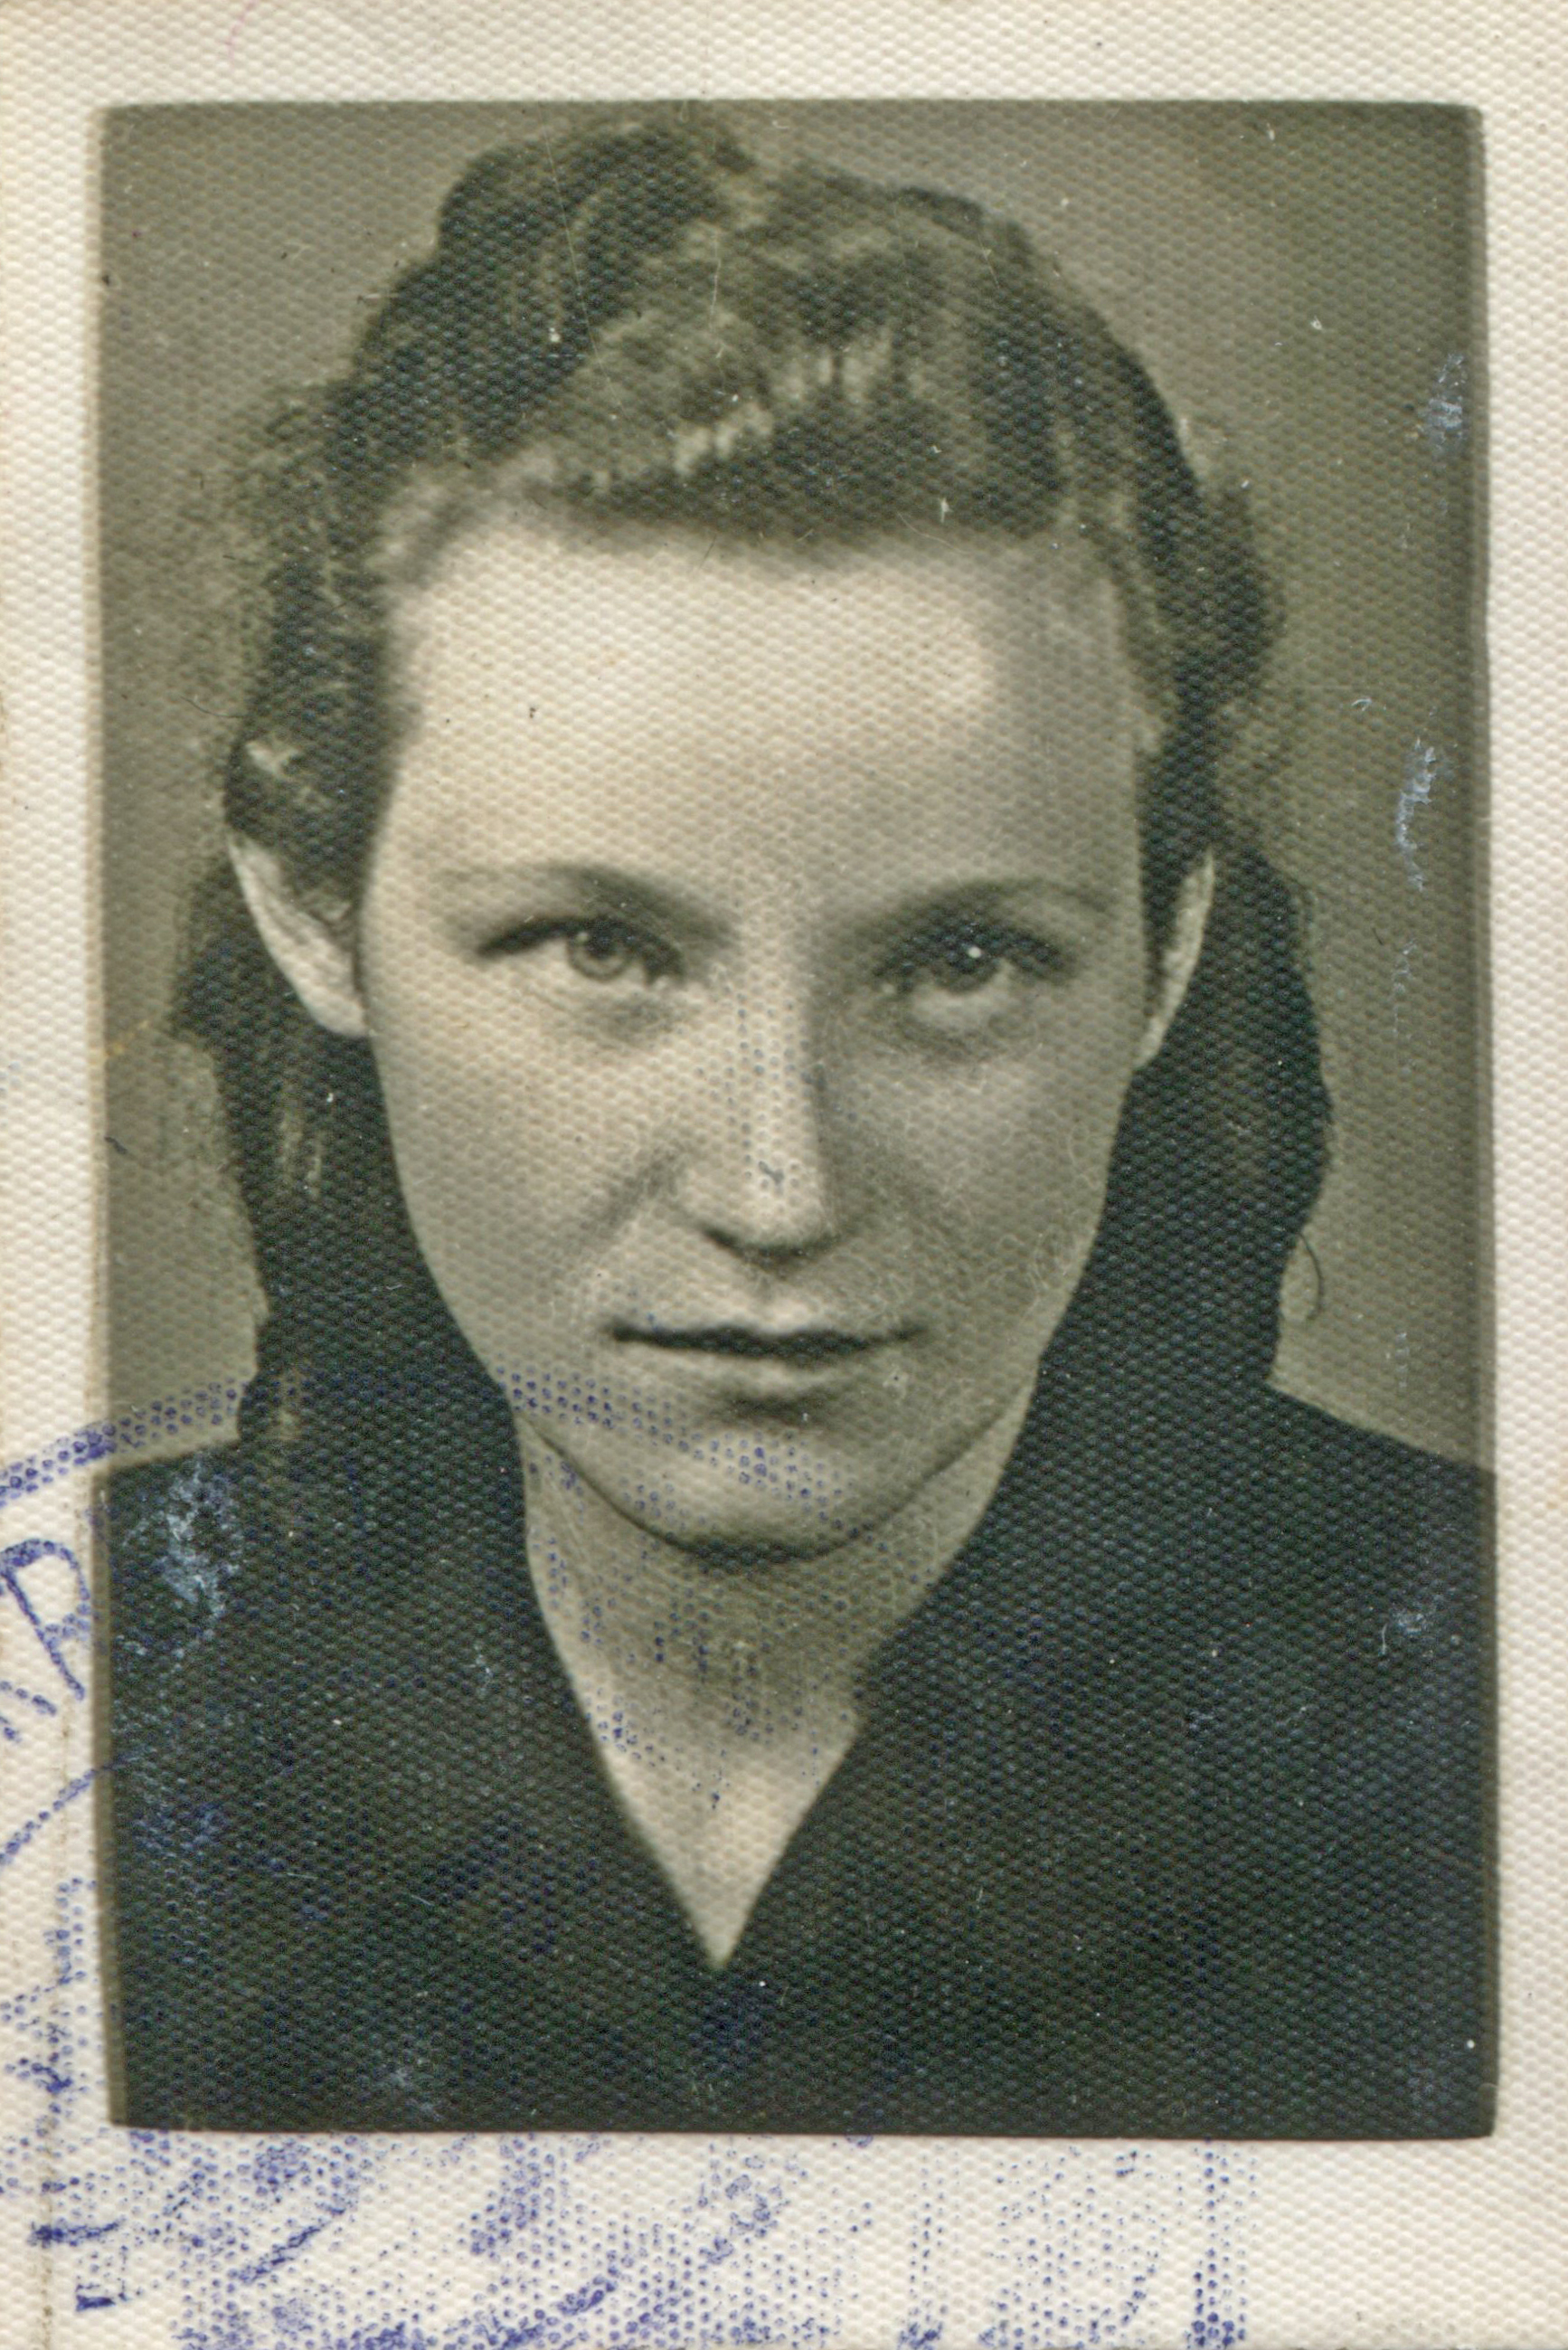 Świadectwo dojrzalości Liceum Pedagogicznego - zdjęcie portretowe, ok. 1949 r.